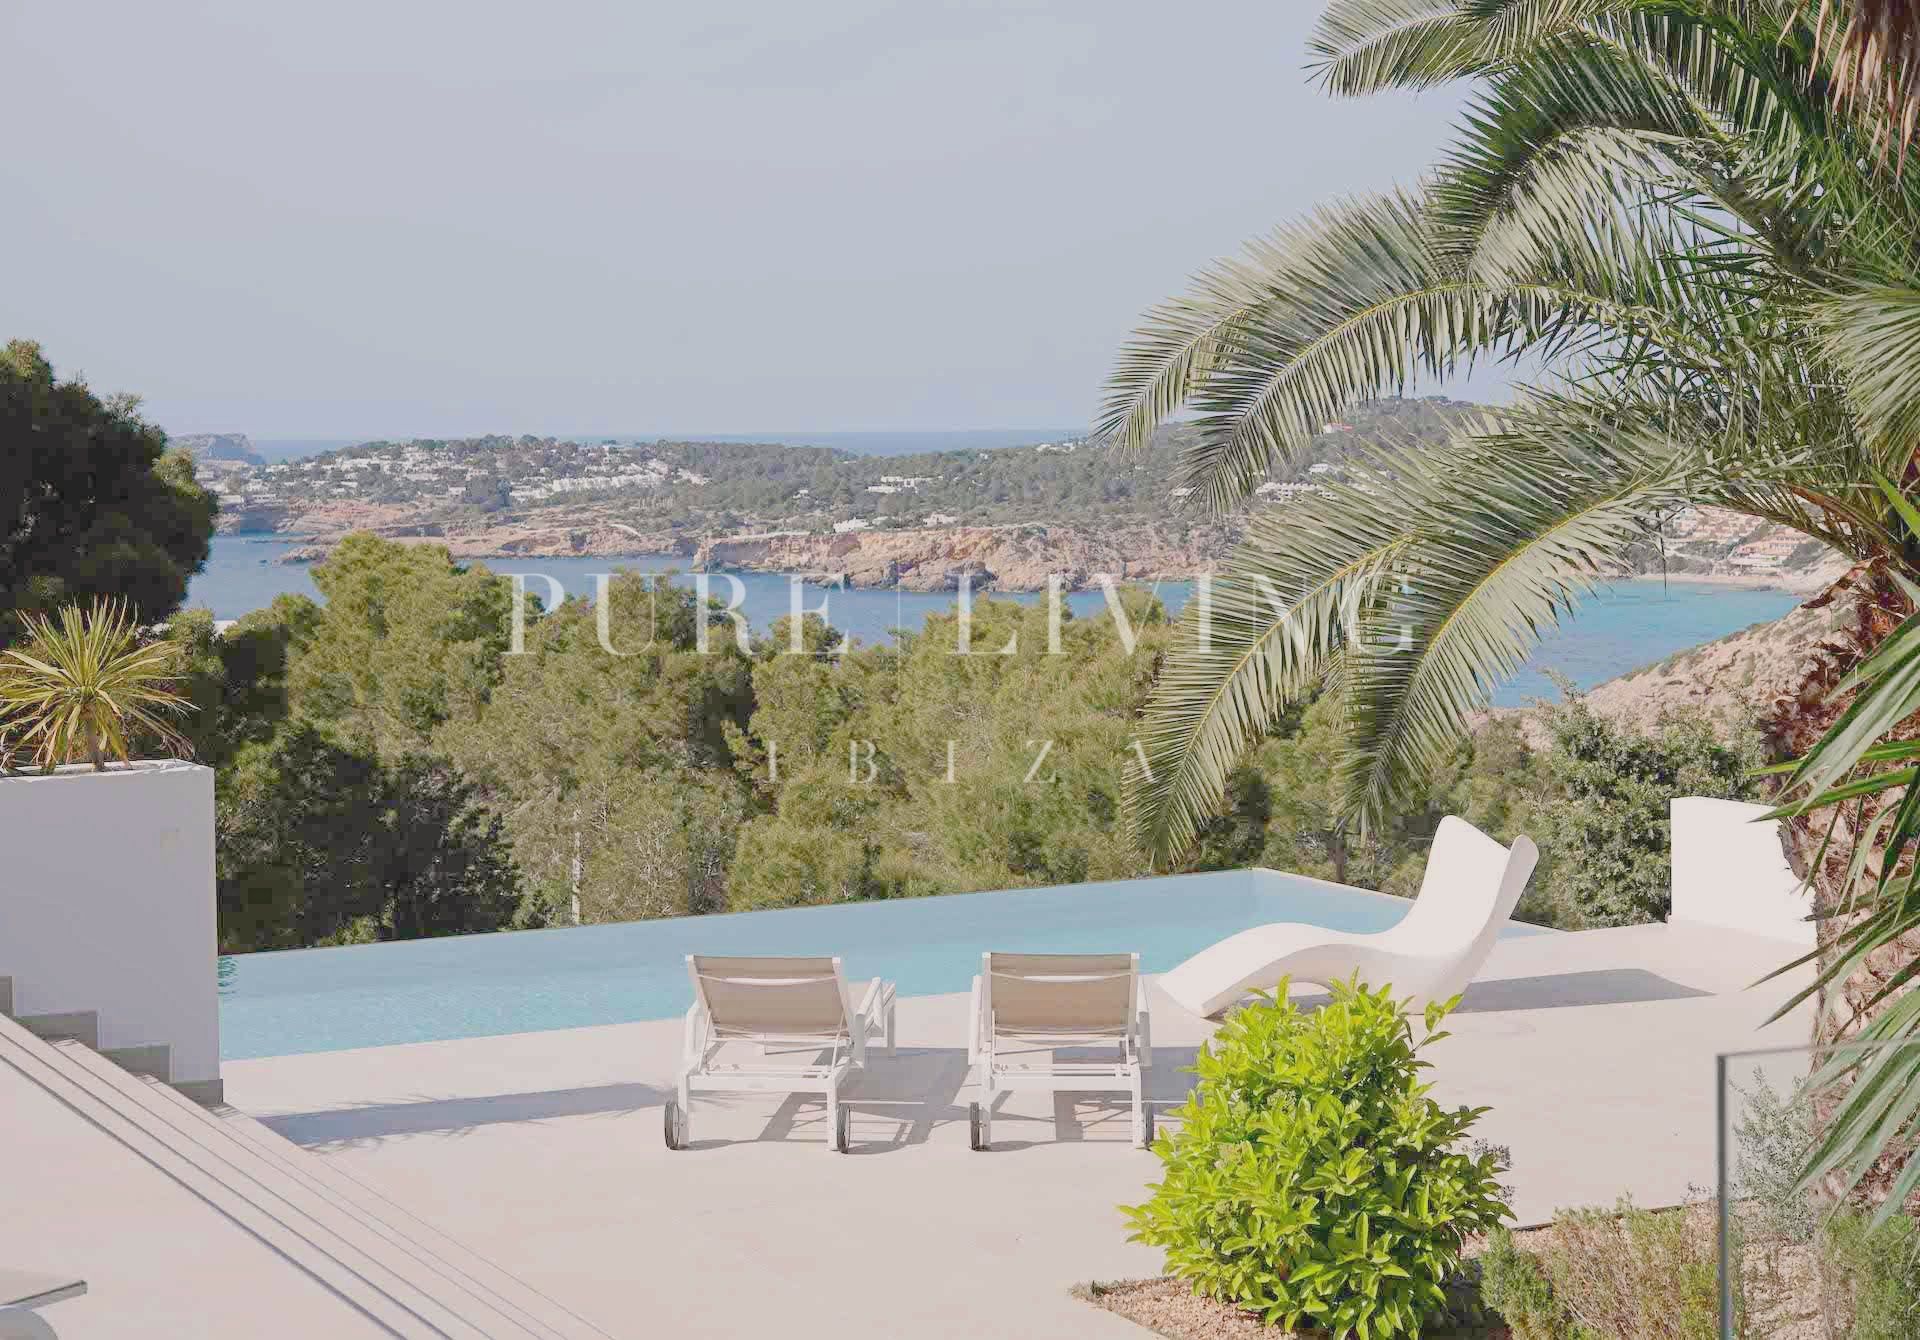 Élégante villa rénovée à Cala Moli, San José, offrant une vue sur la mer et un luxe moderne dans un cadre privé et tranquille.